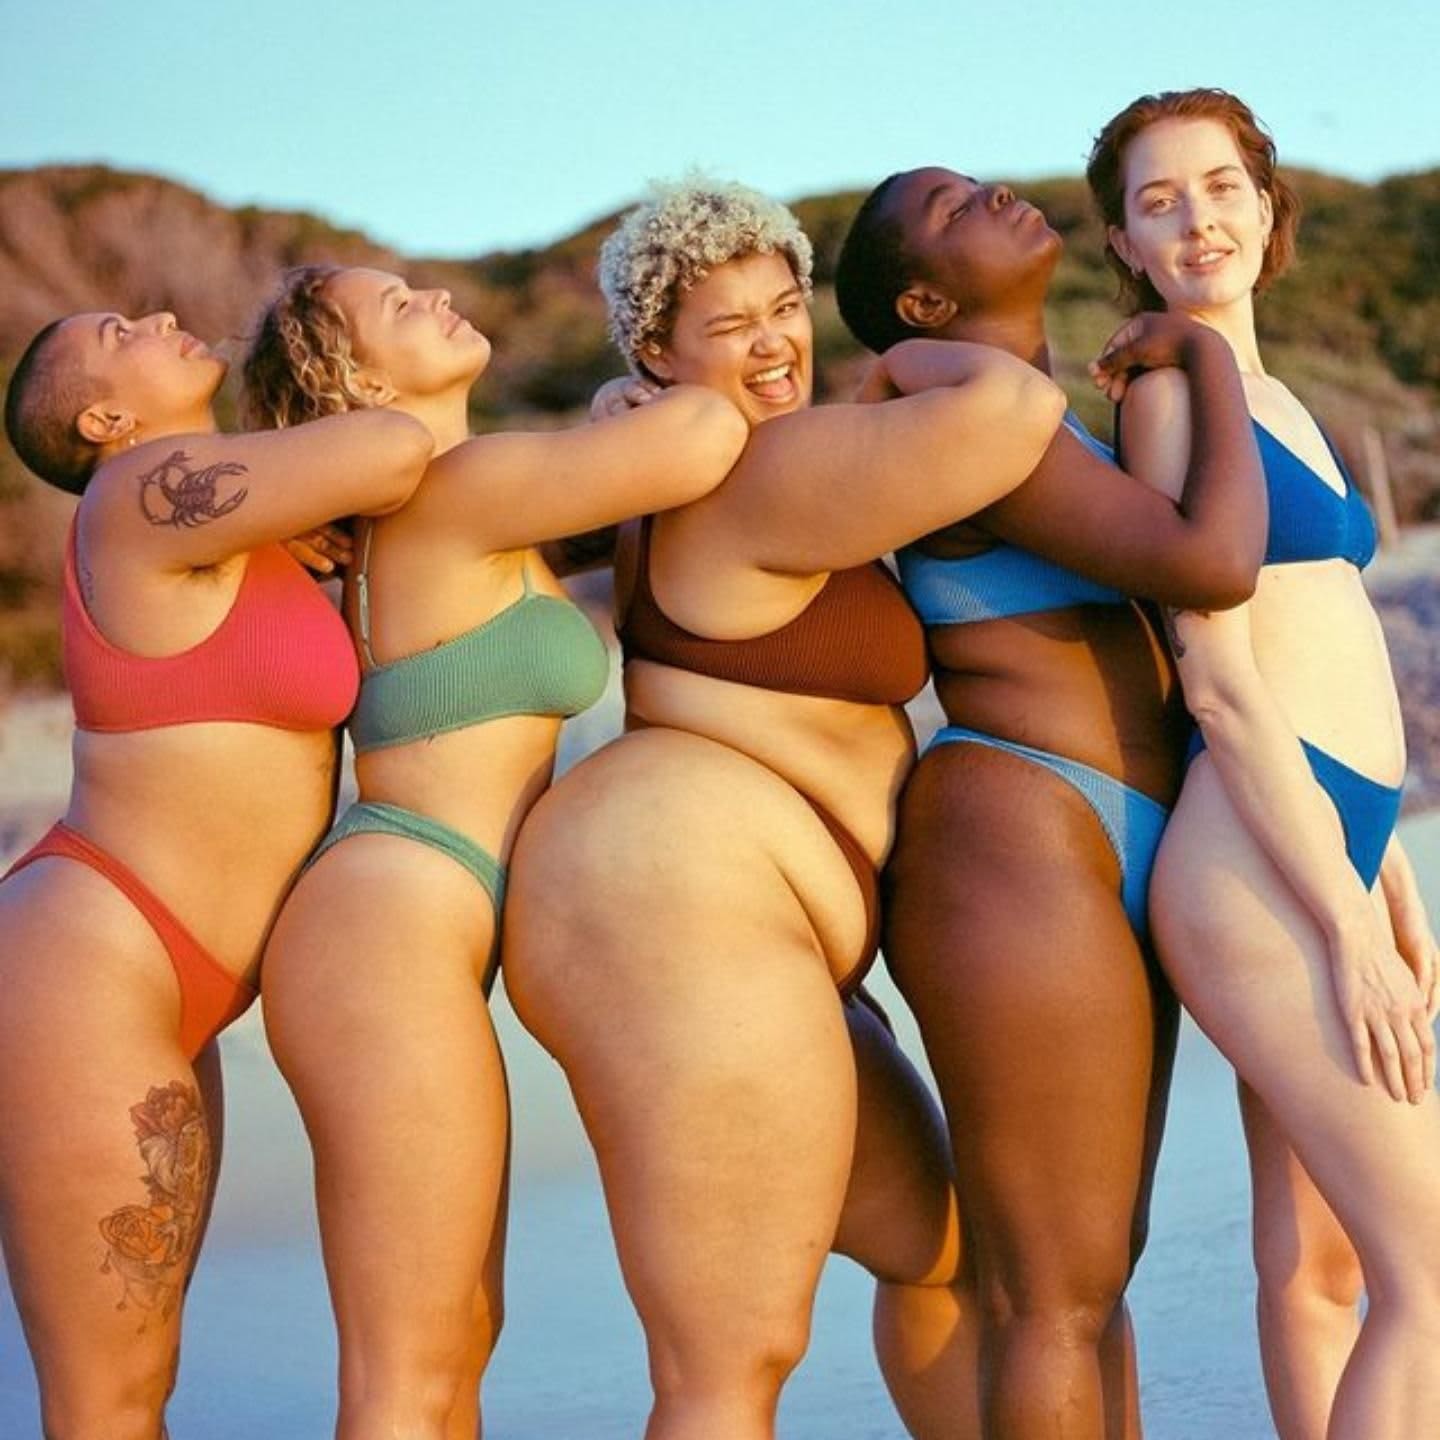 Photo of 5 women in bikini on the beach